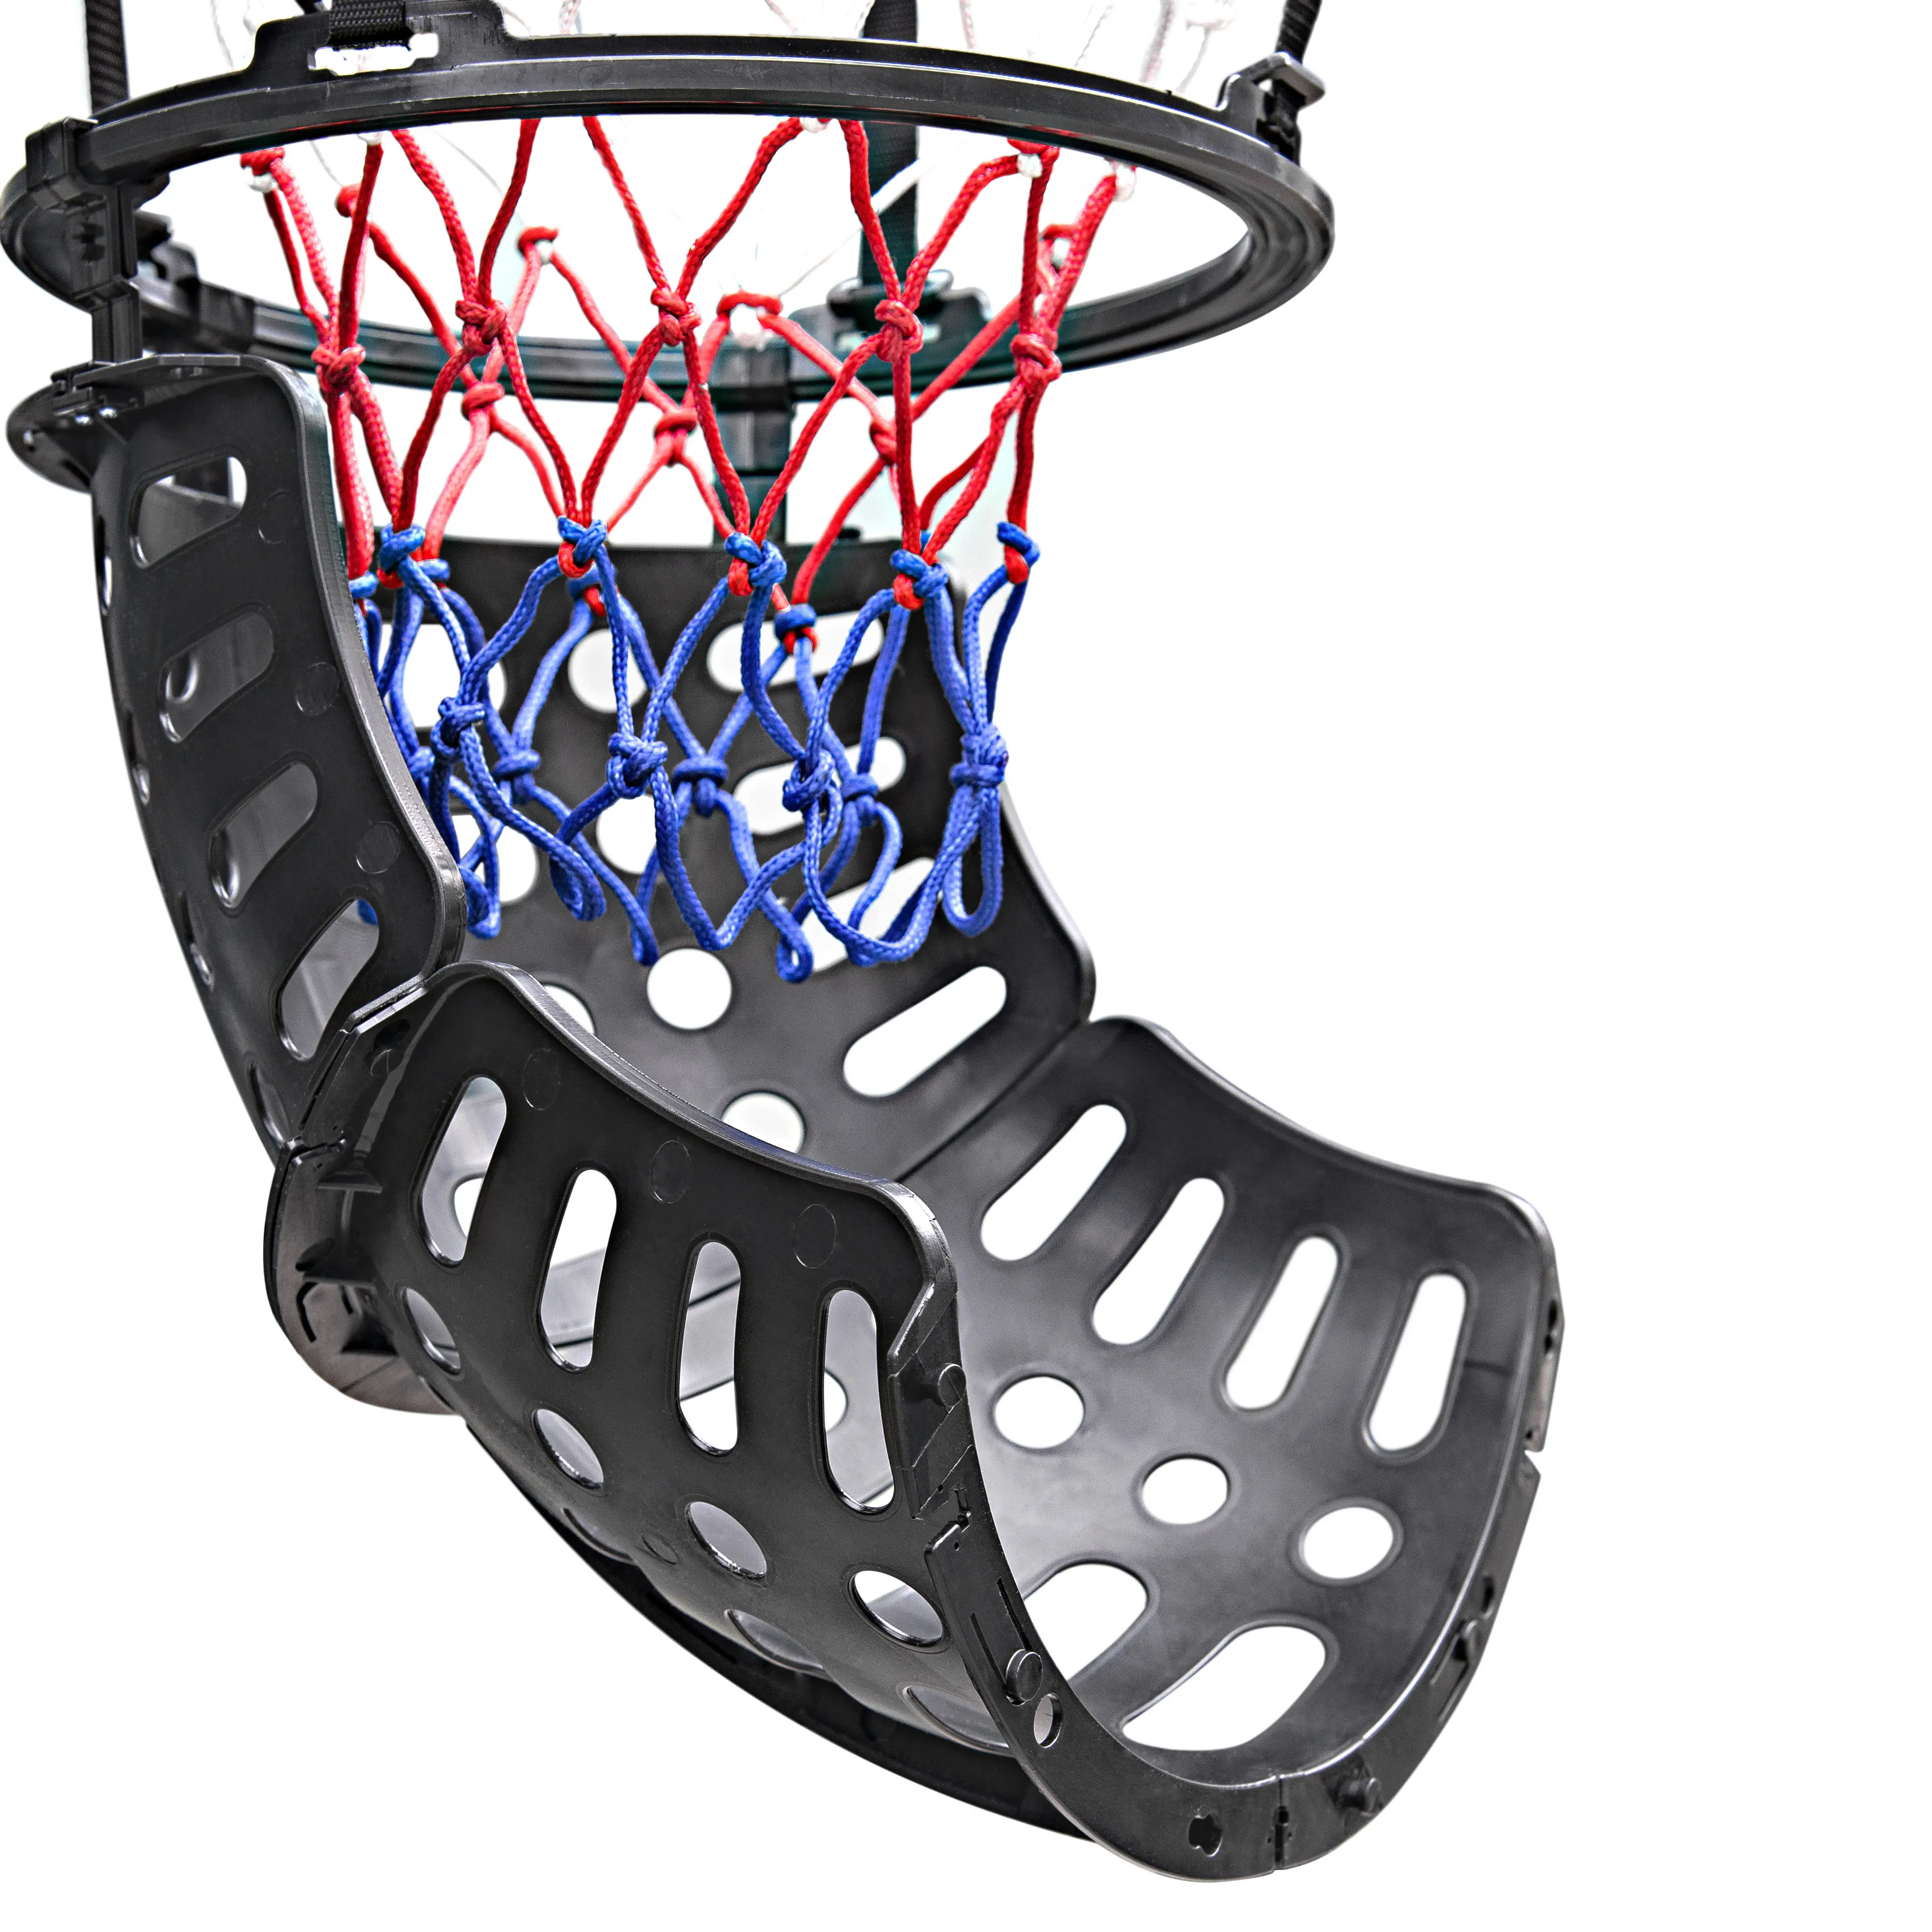 Basketball Hoop Return | Basketball Training Equipment, New Model